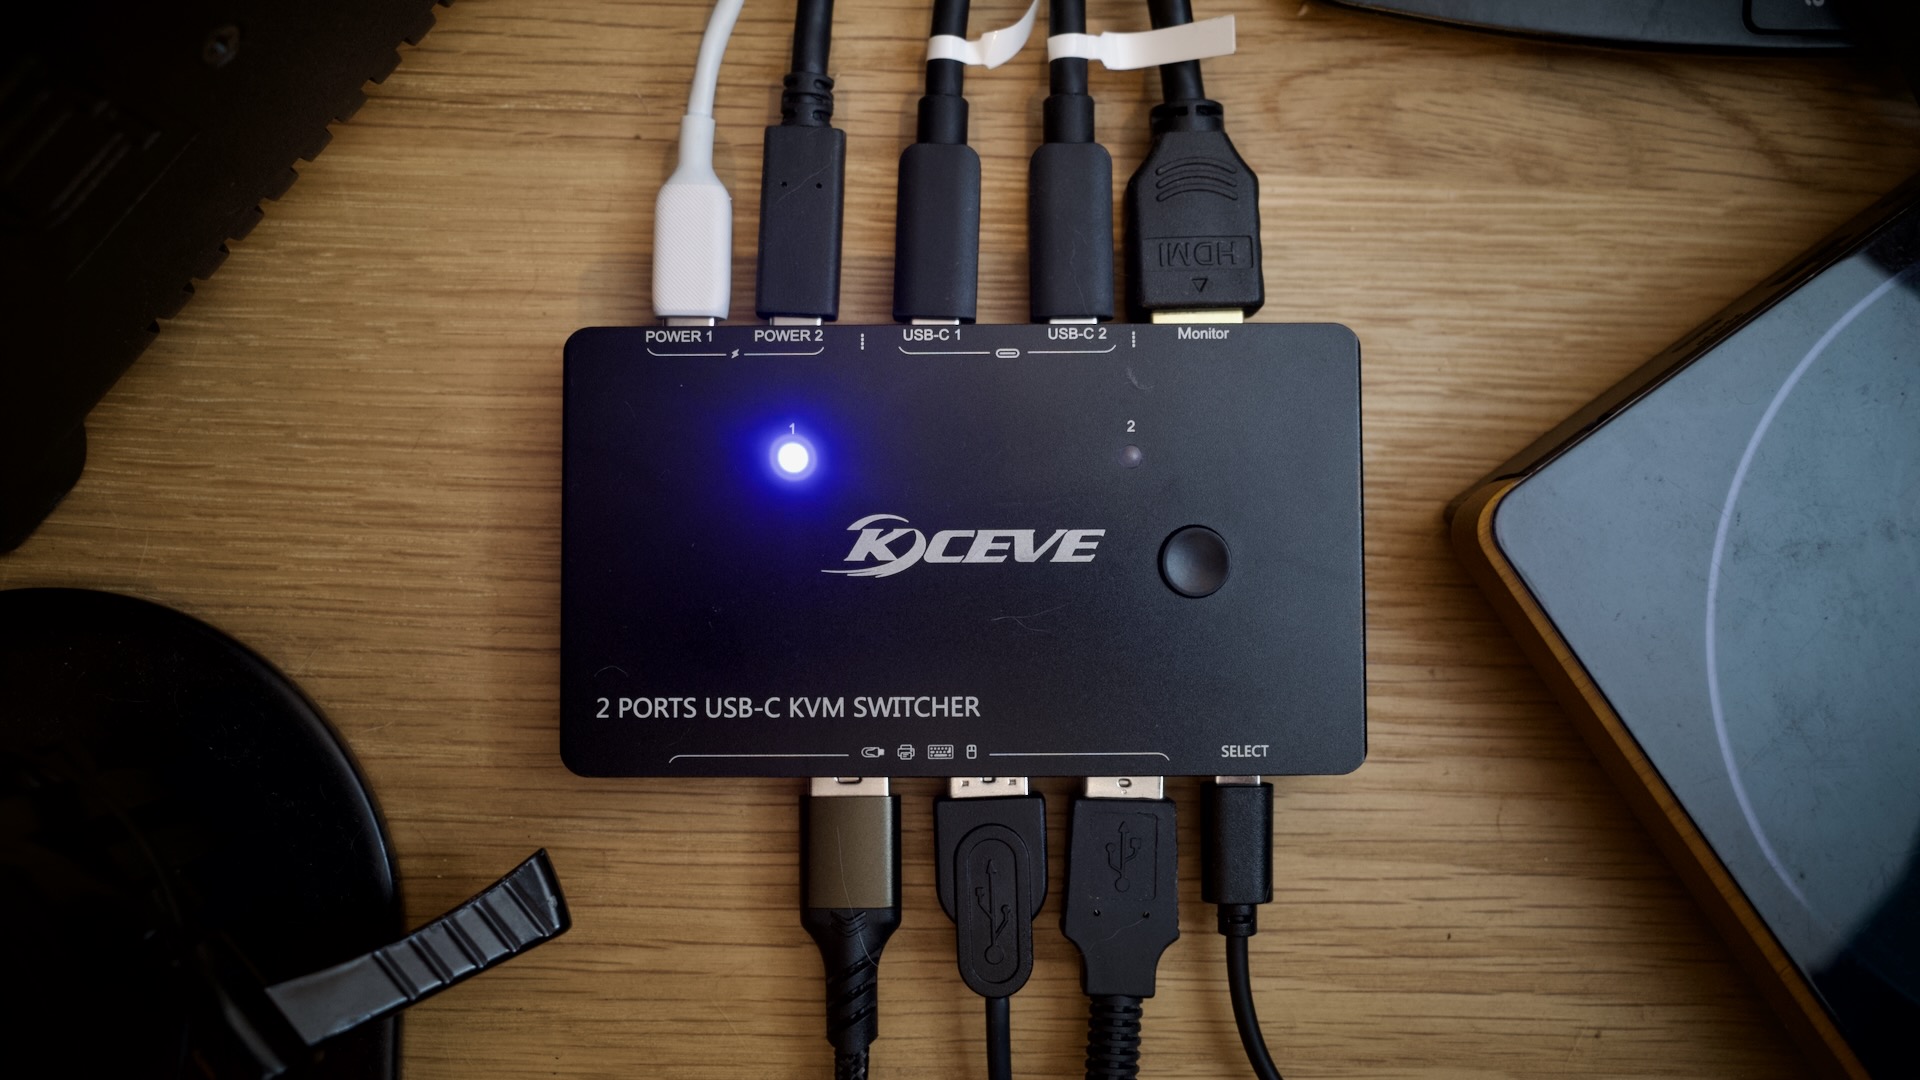 KCEVE 2 Ports USB-C KVM Switcher に色々なケーブルを接続した状態